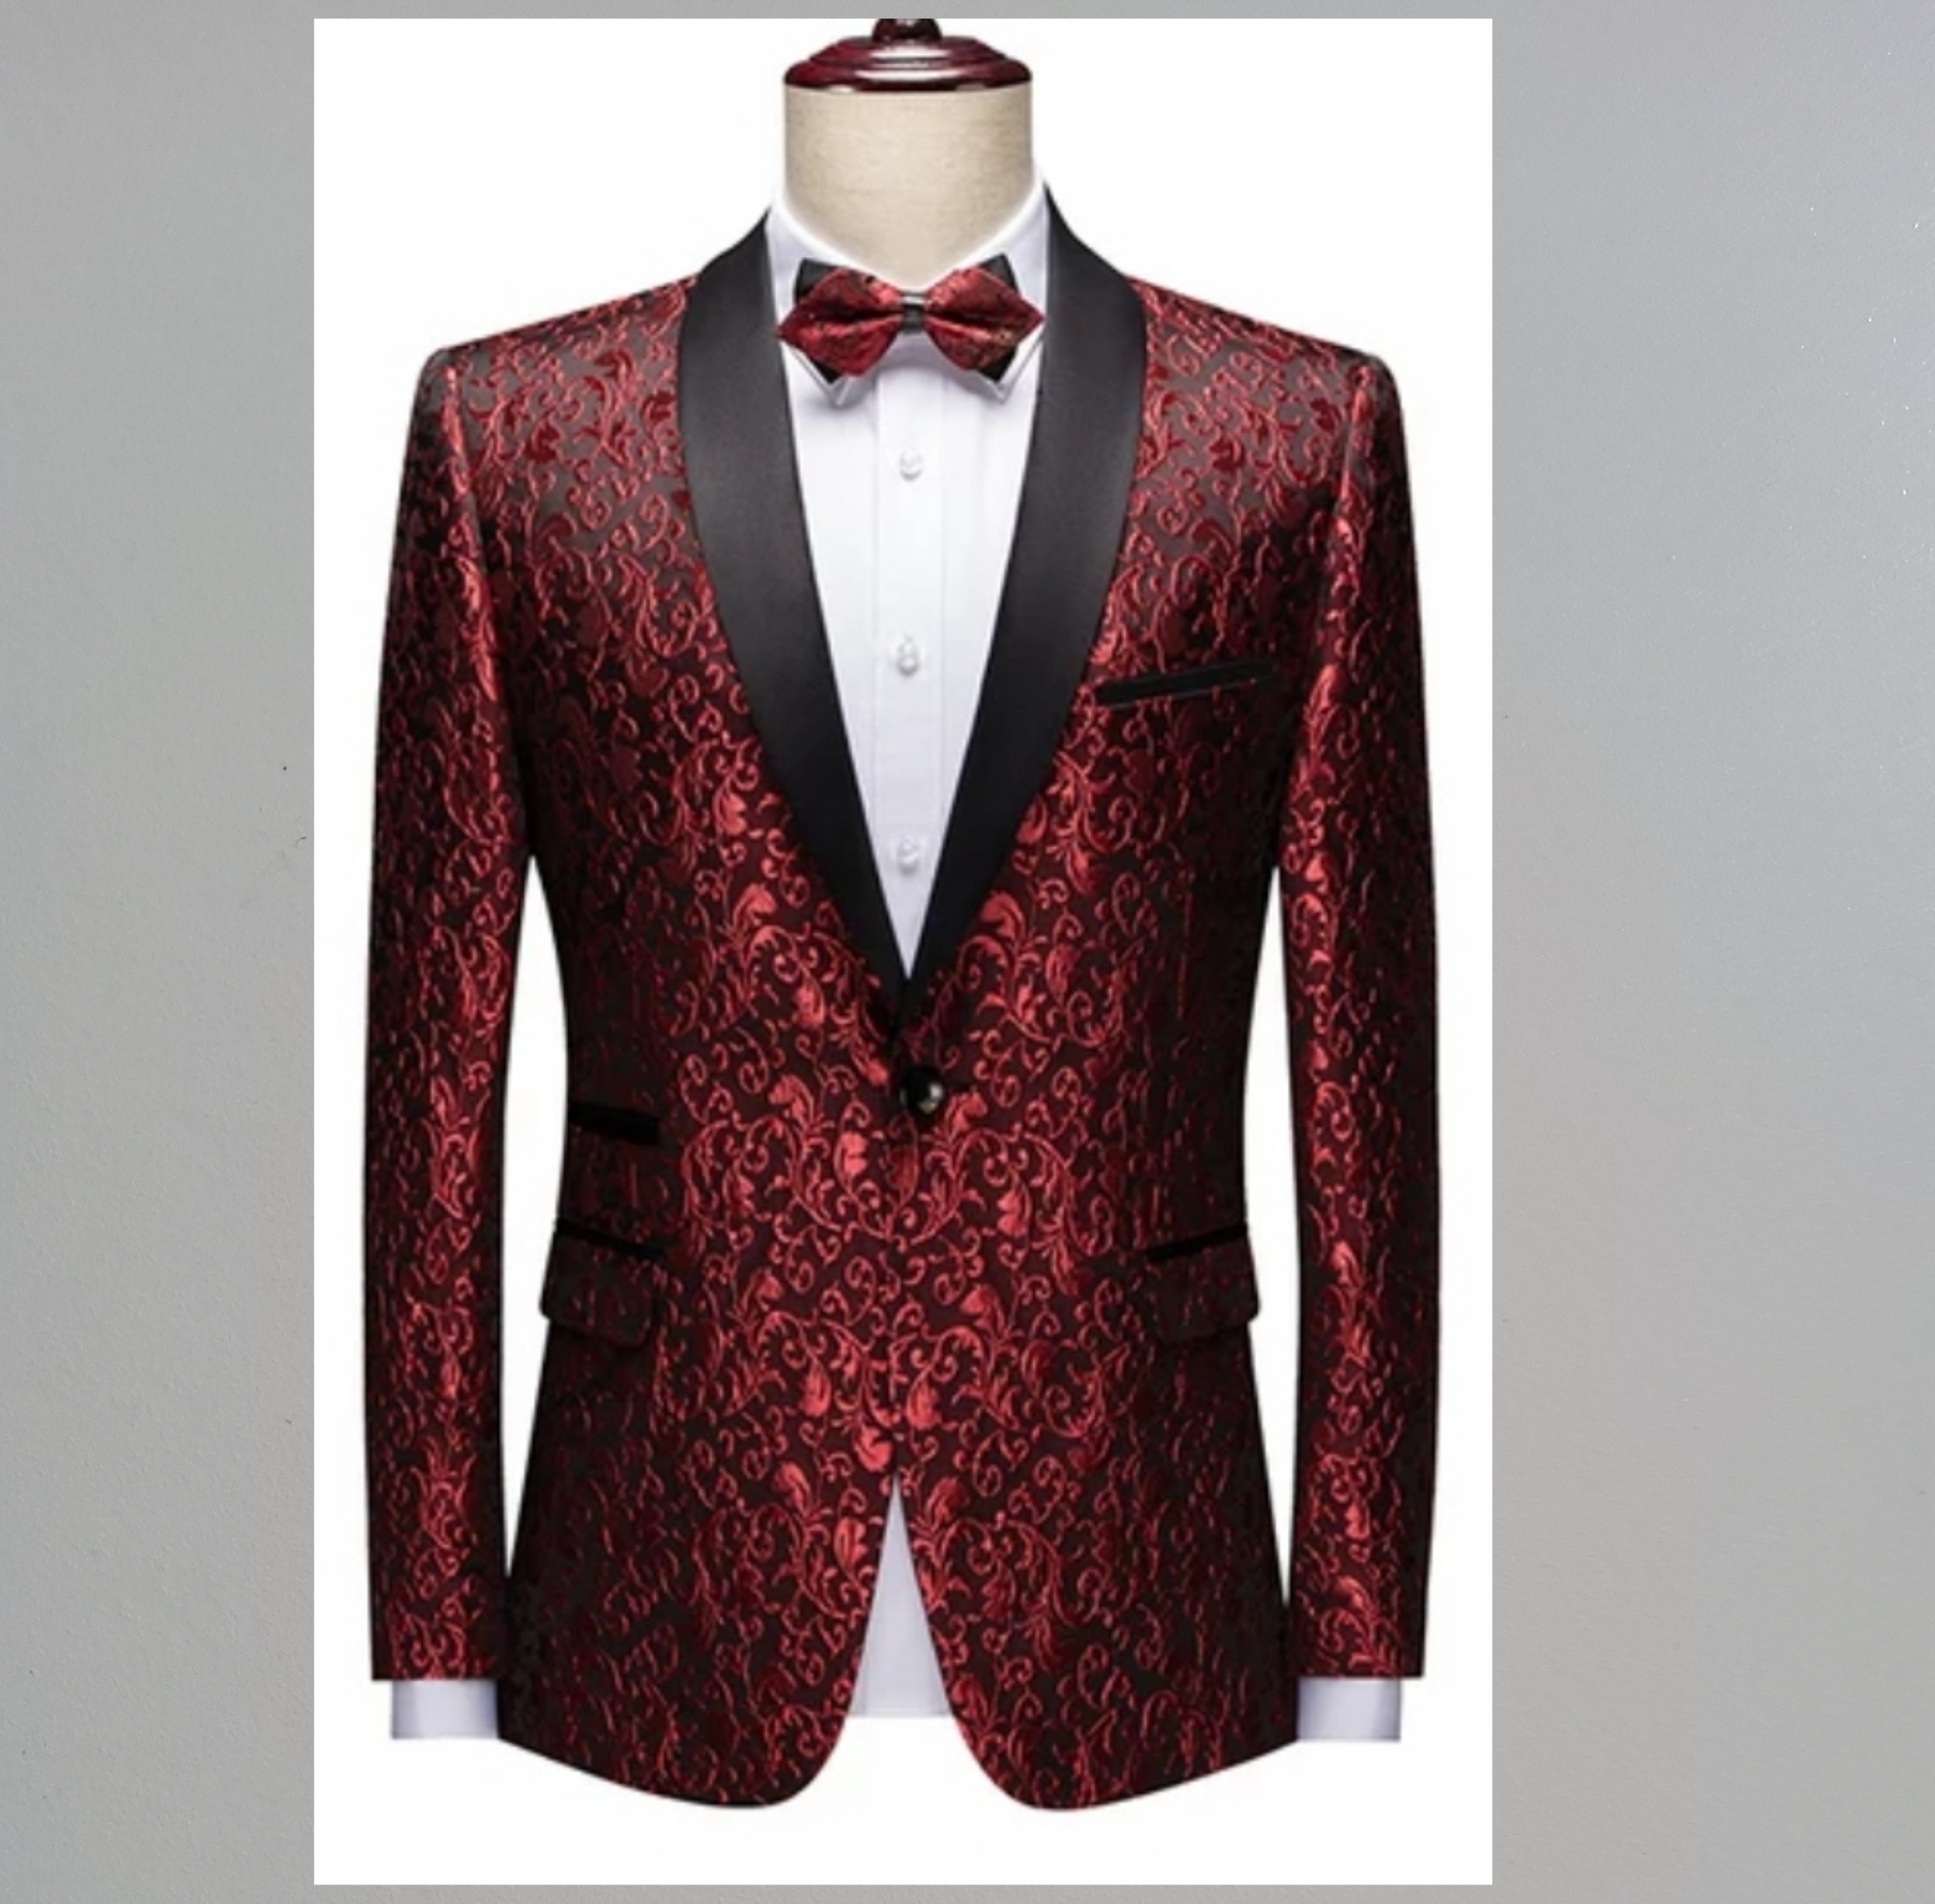 208A_tailor_tailors_bespoke_tailoring_tuxedo_tux_wedding_black_tie_suit_suits_singapore_business